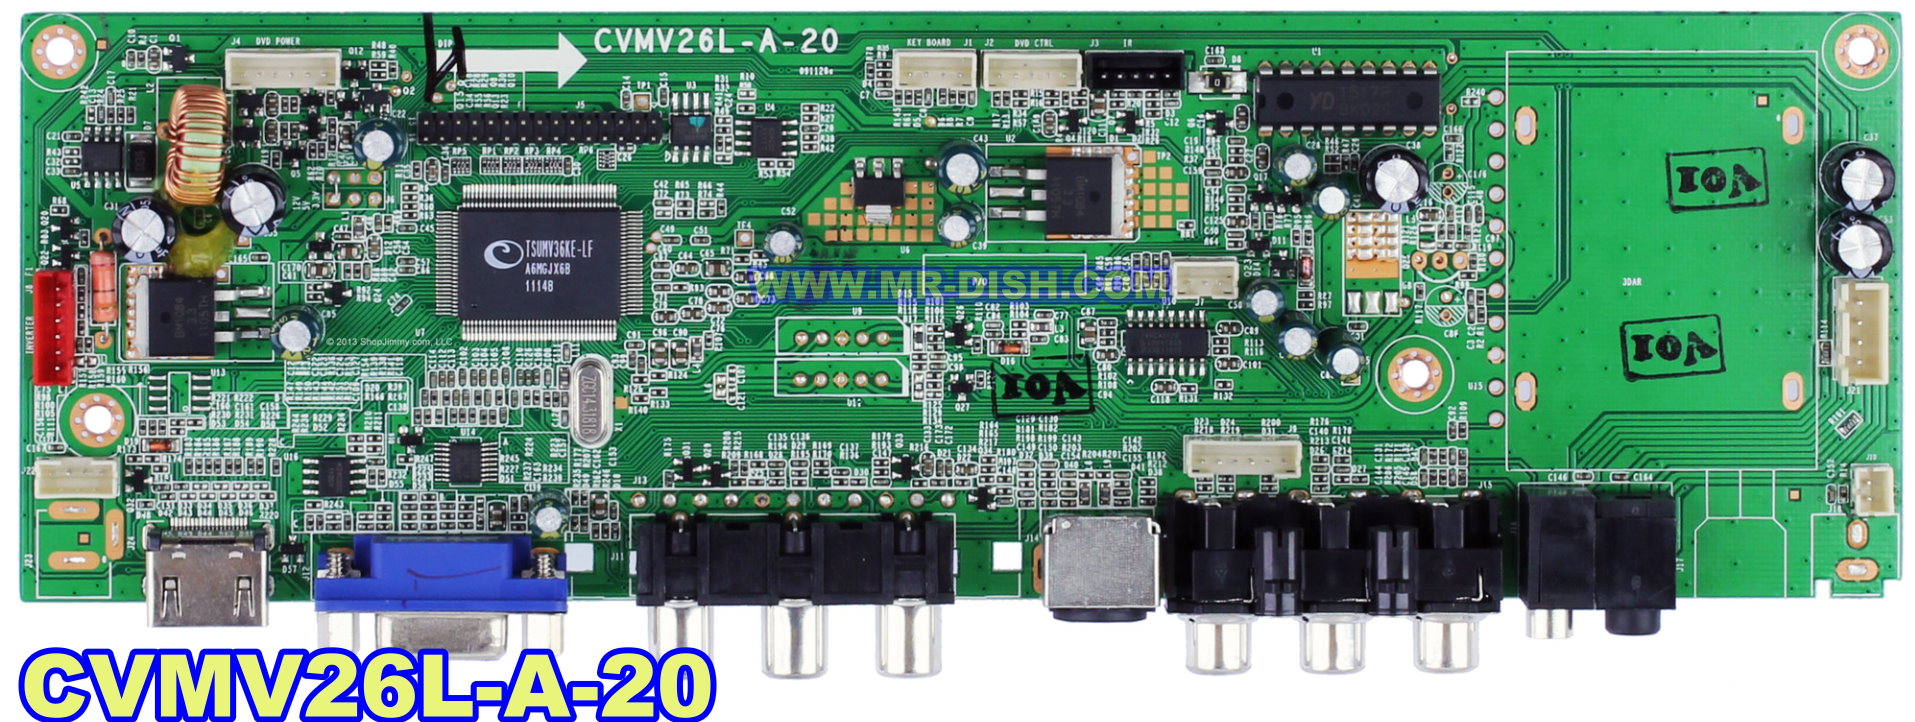 CVMV26L-A-20 LED TV FIRMWARE